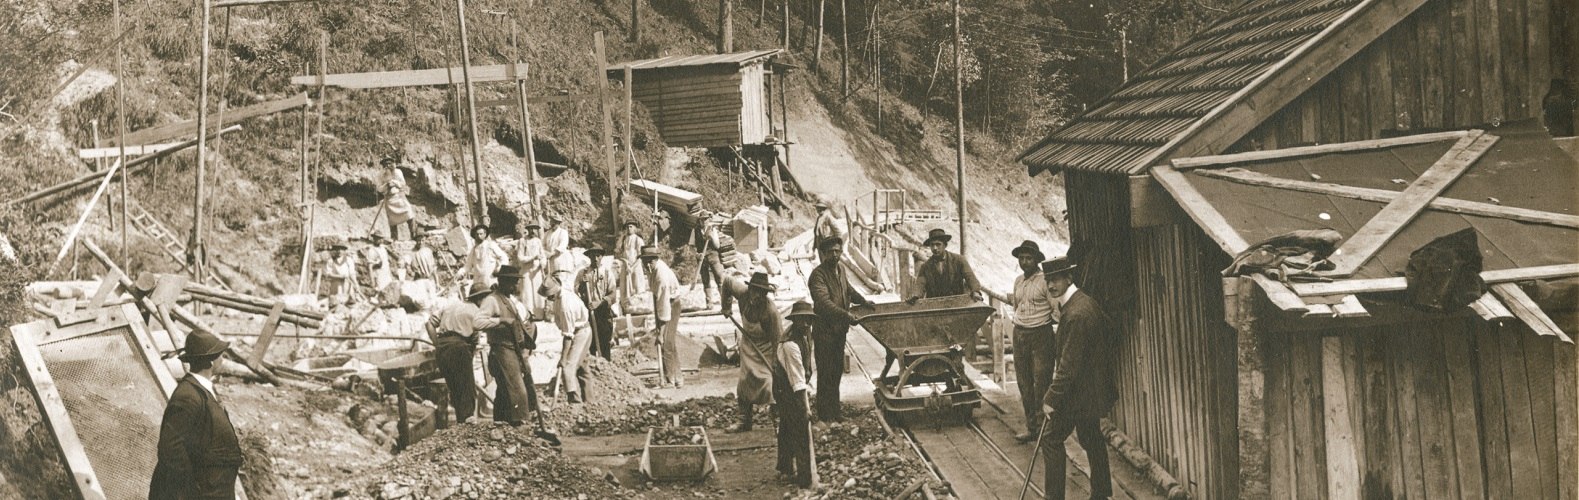 Bau der Zahnradbahntrasse auf den Wendelstein um 1910-12, © Archiv der Wendelsteinbahn GmbH